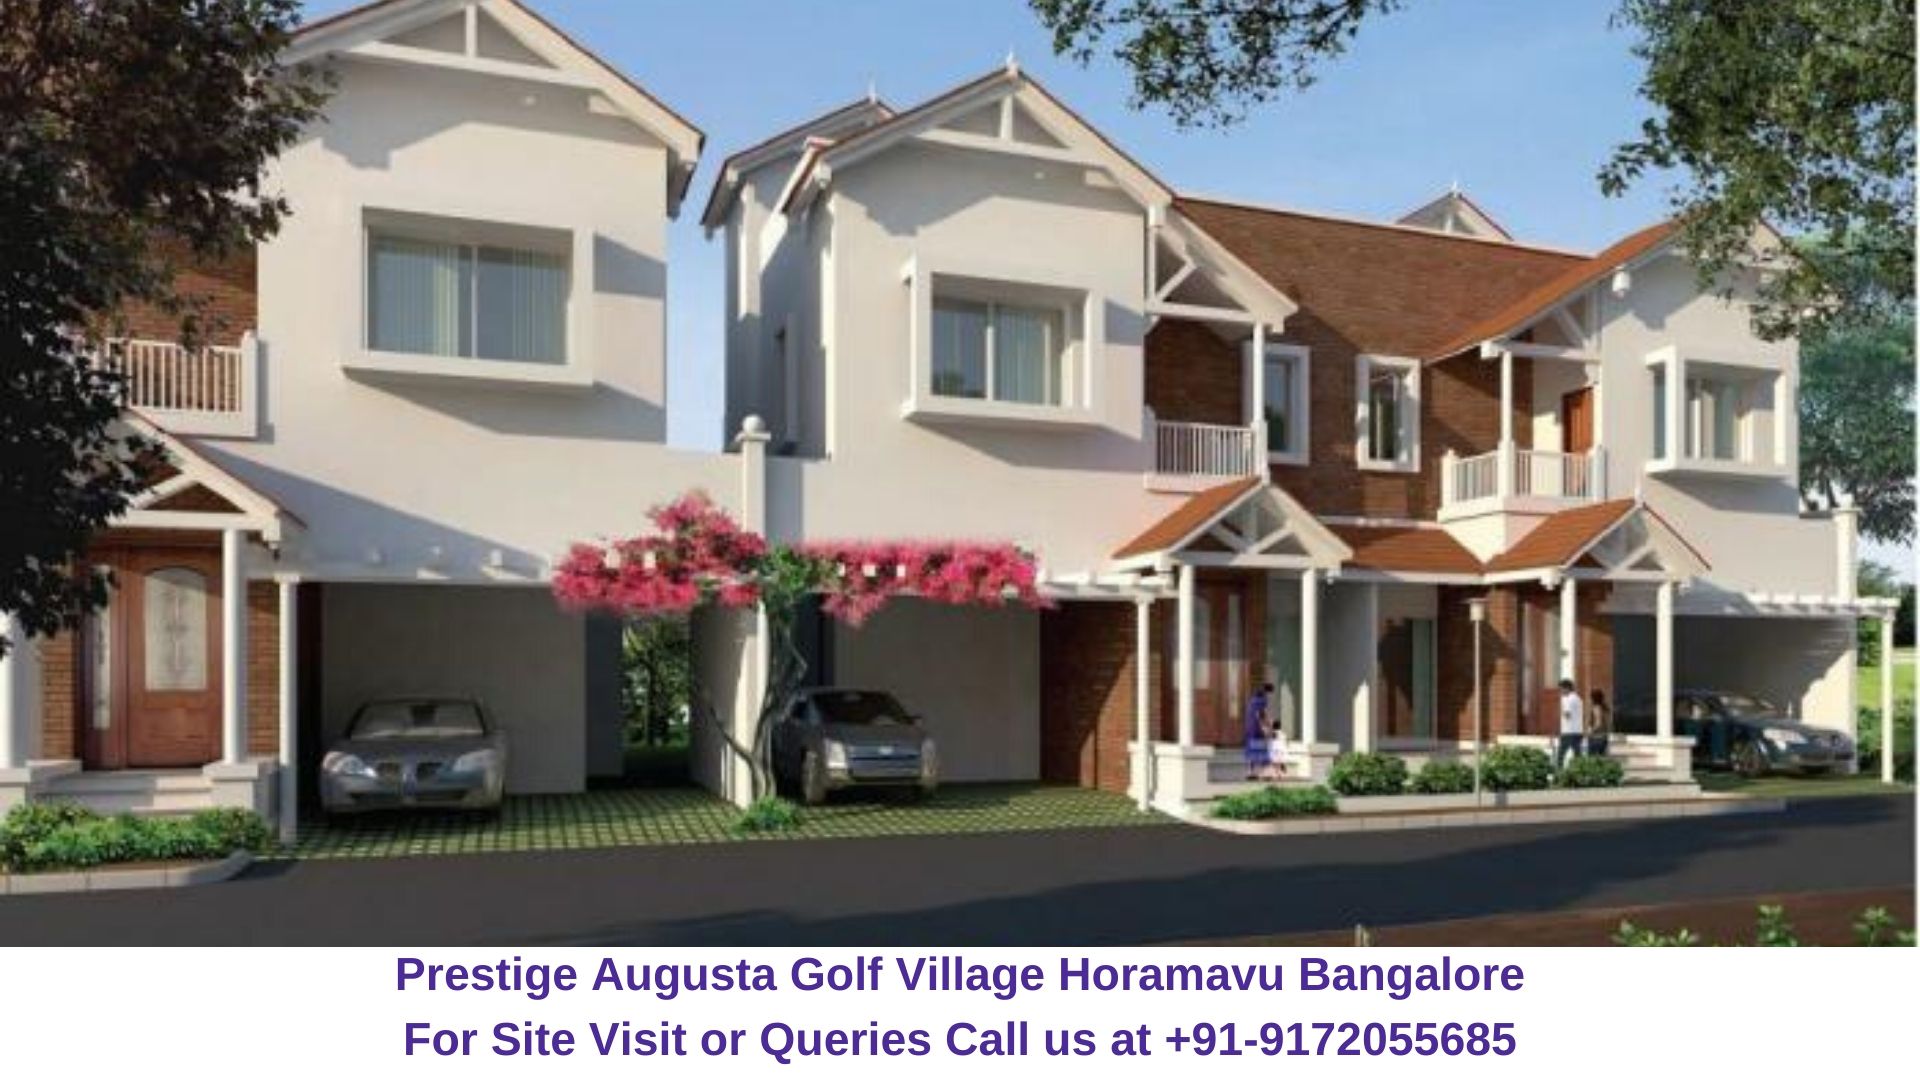 Prestige Augusta Golf Village Horamavu Bangalore